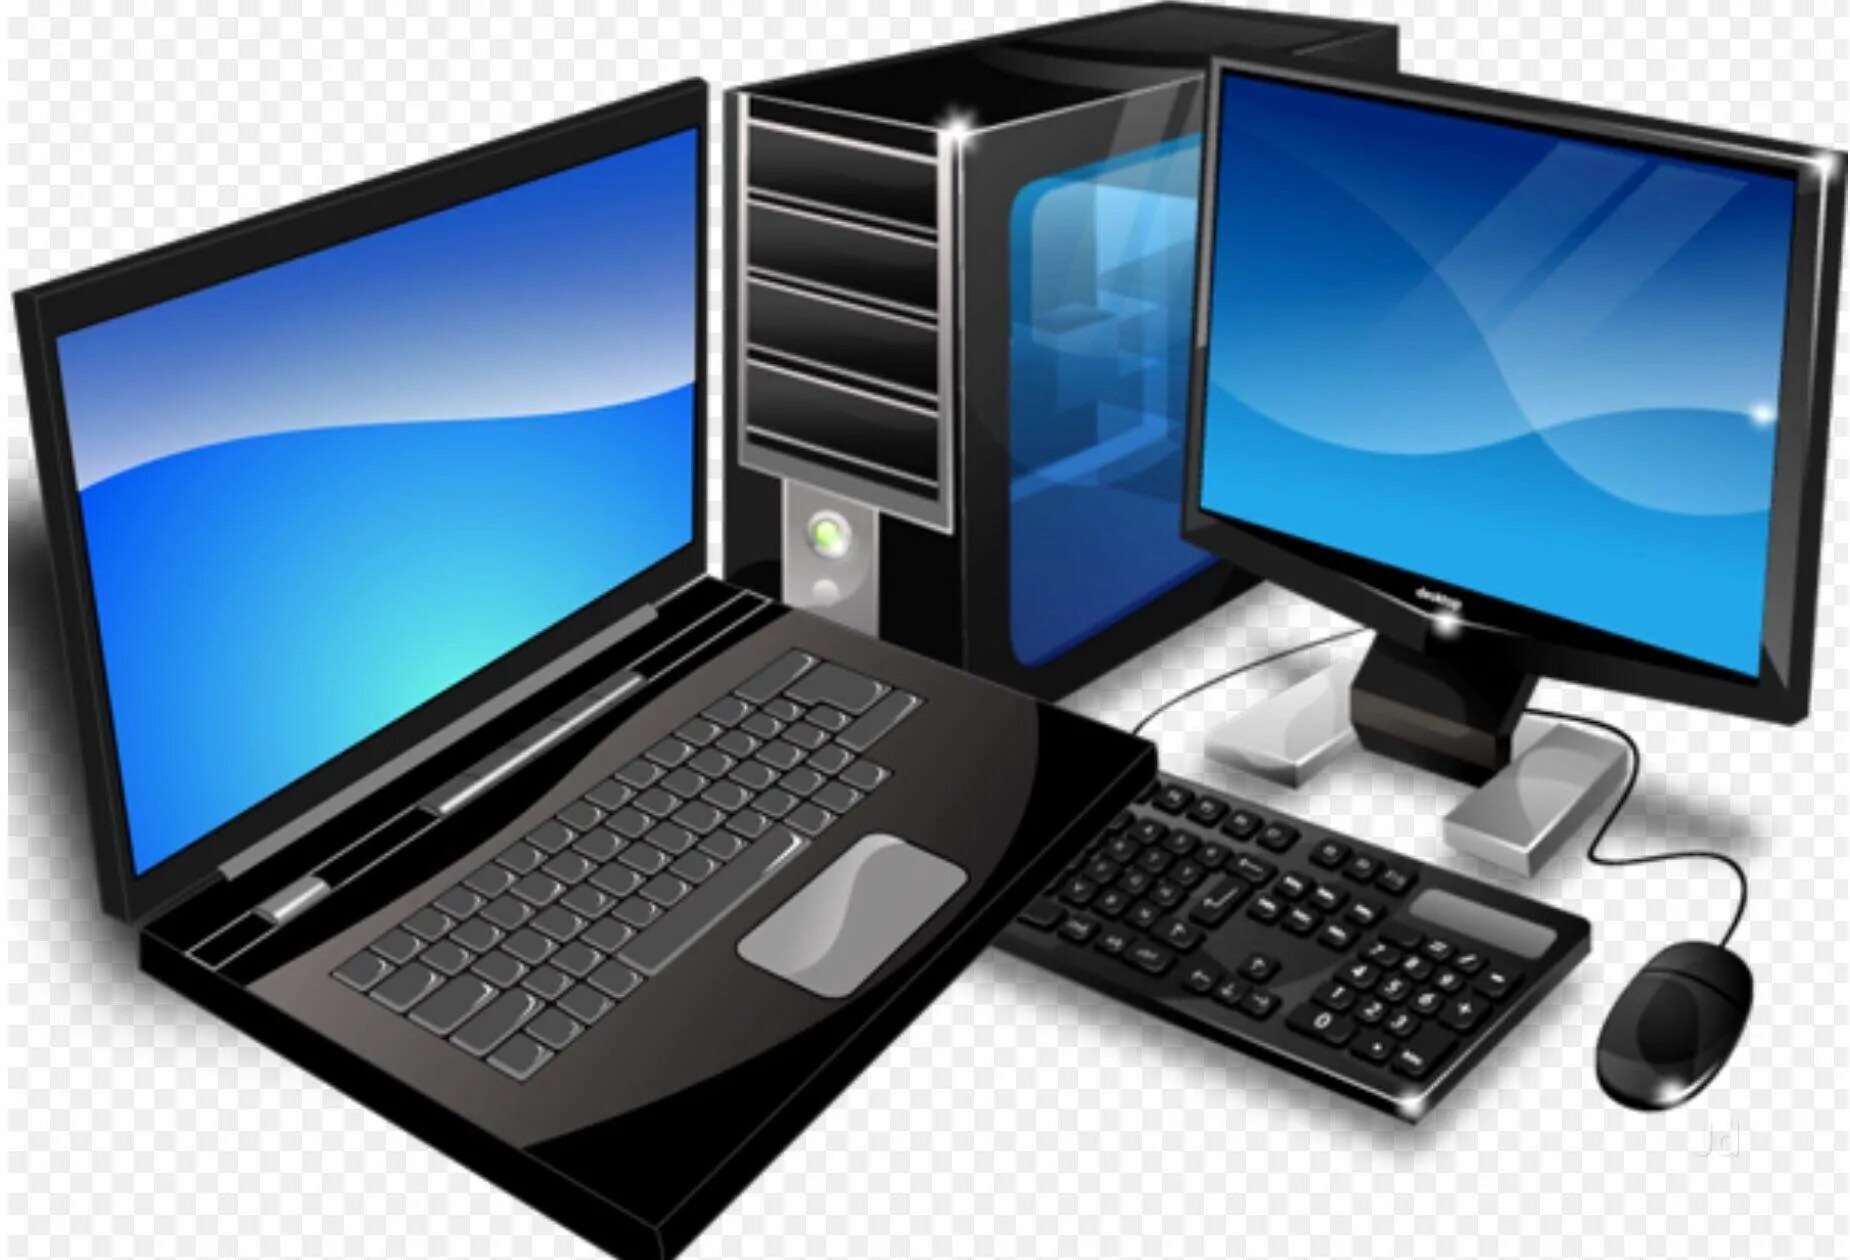 Computers today. Компьютерная техника. Компьютерное оборудование. ПК И ноутбук. Компьютеры и оргтехника.